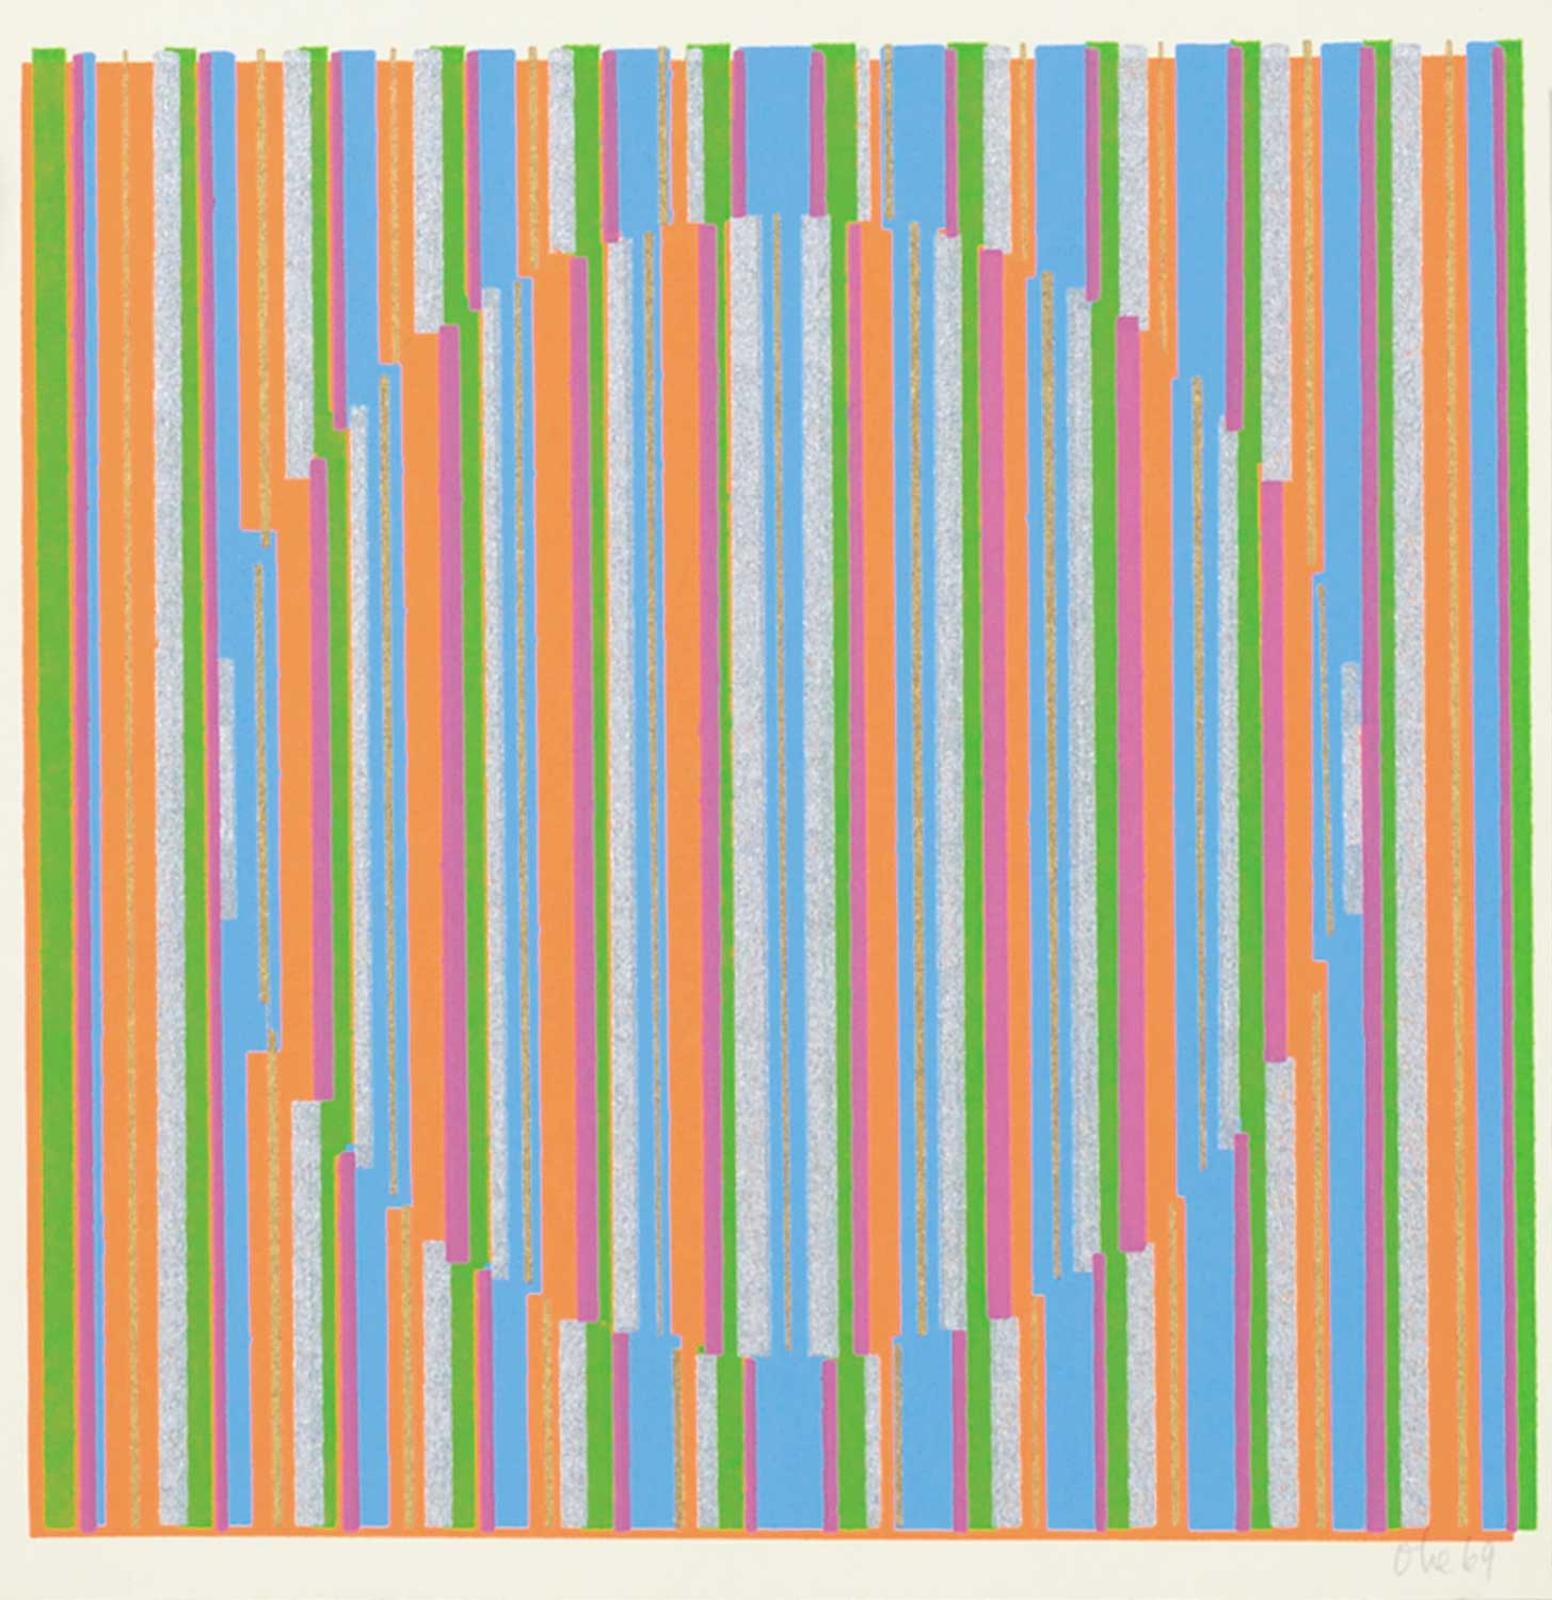 Katie von der Ohe (1937) - Untitled - Vertical Striped